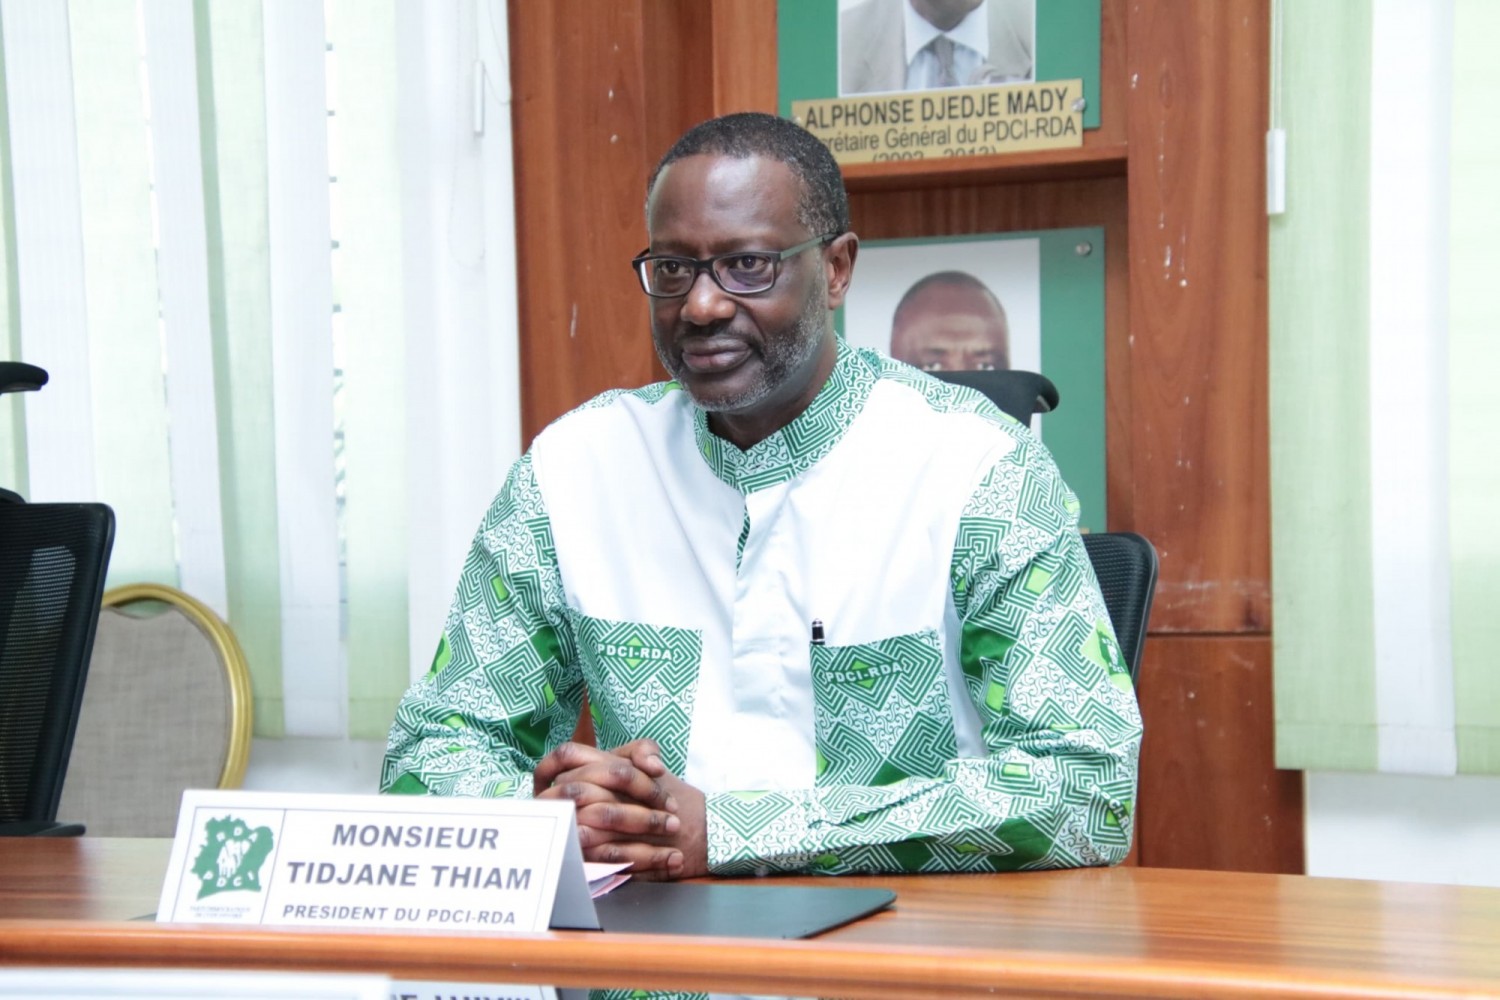 Côte d'Ivoire : Propos erronés attribués à Tidjane Thiam, le président du PDCI-RDA appelle la presse et le public à la vigilance et menace de poursuite judiciaire leurs auteurs